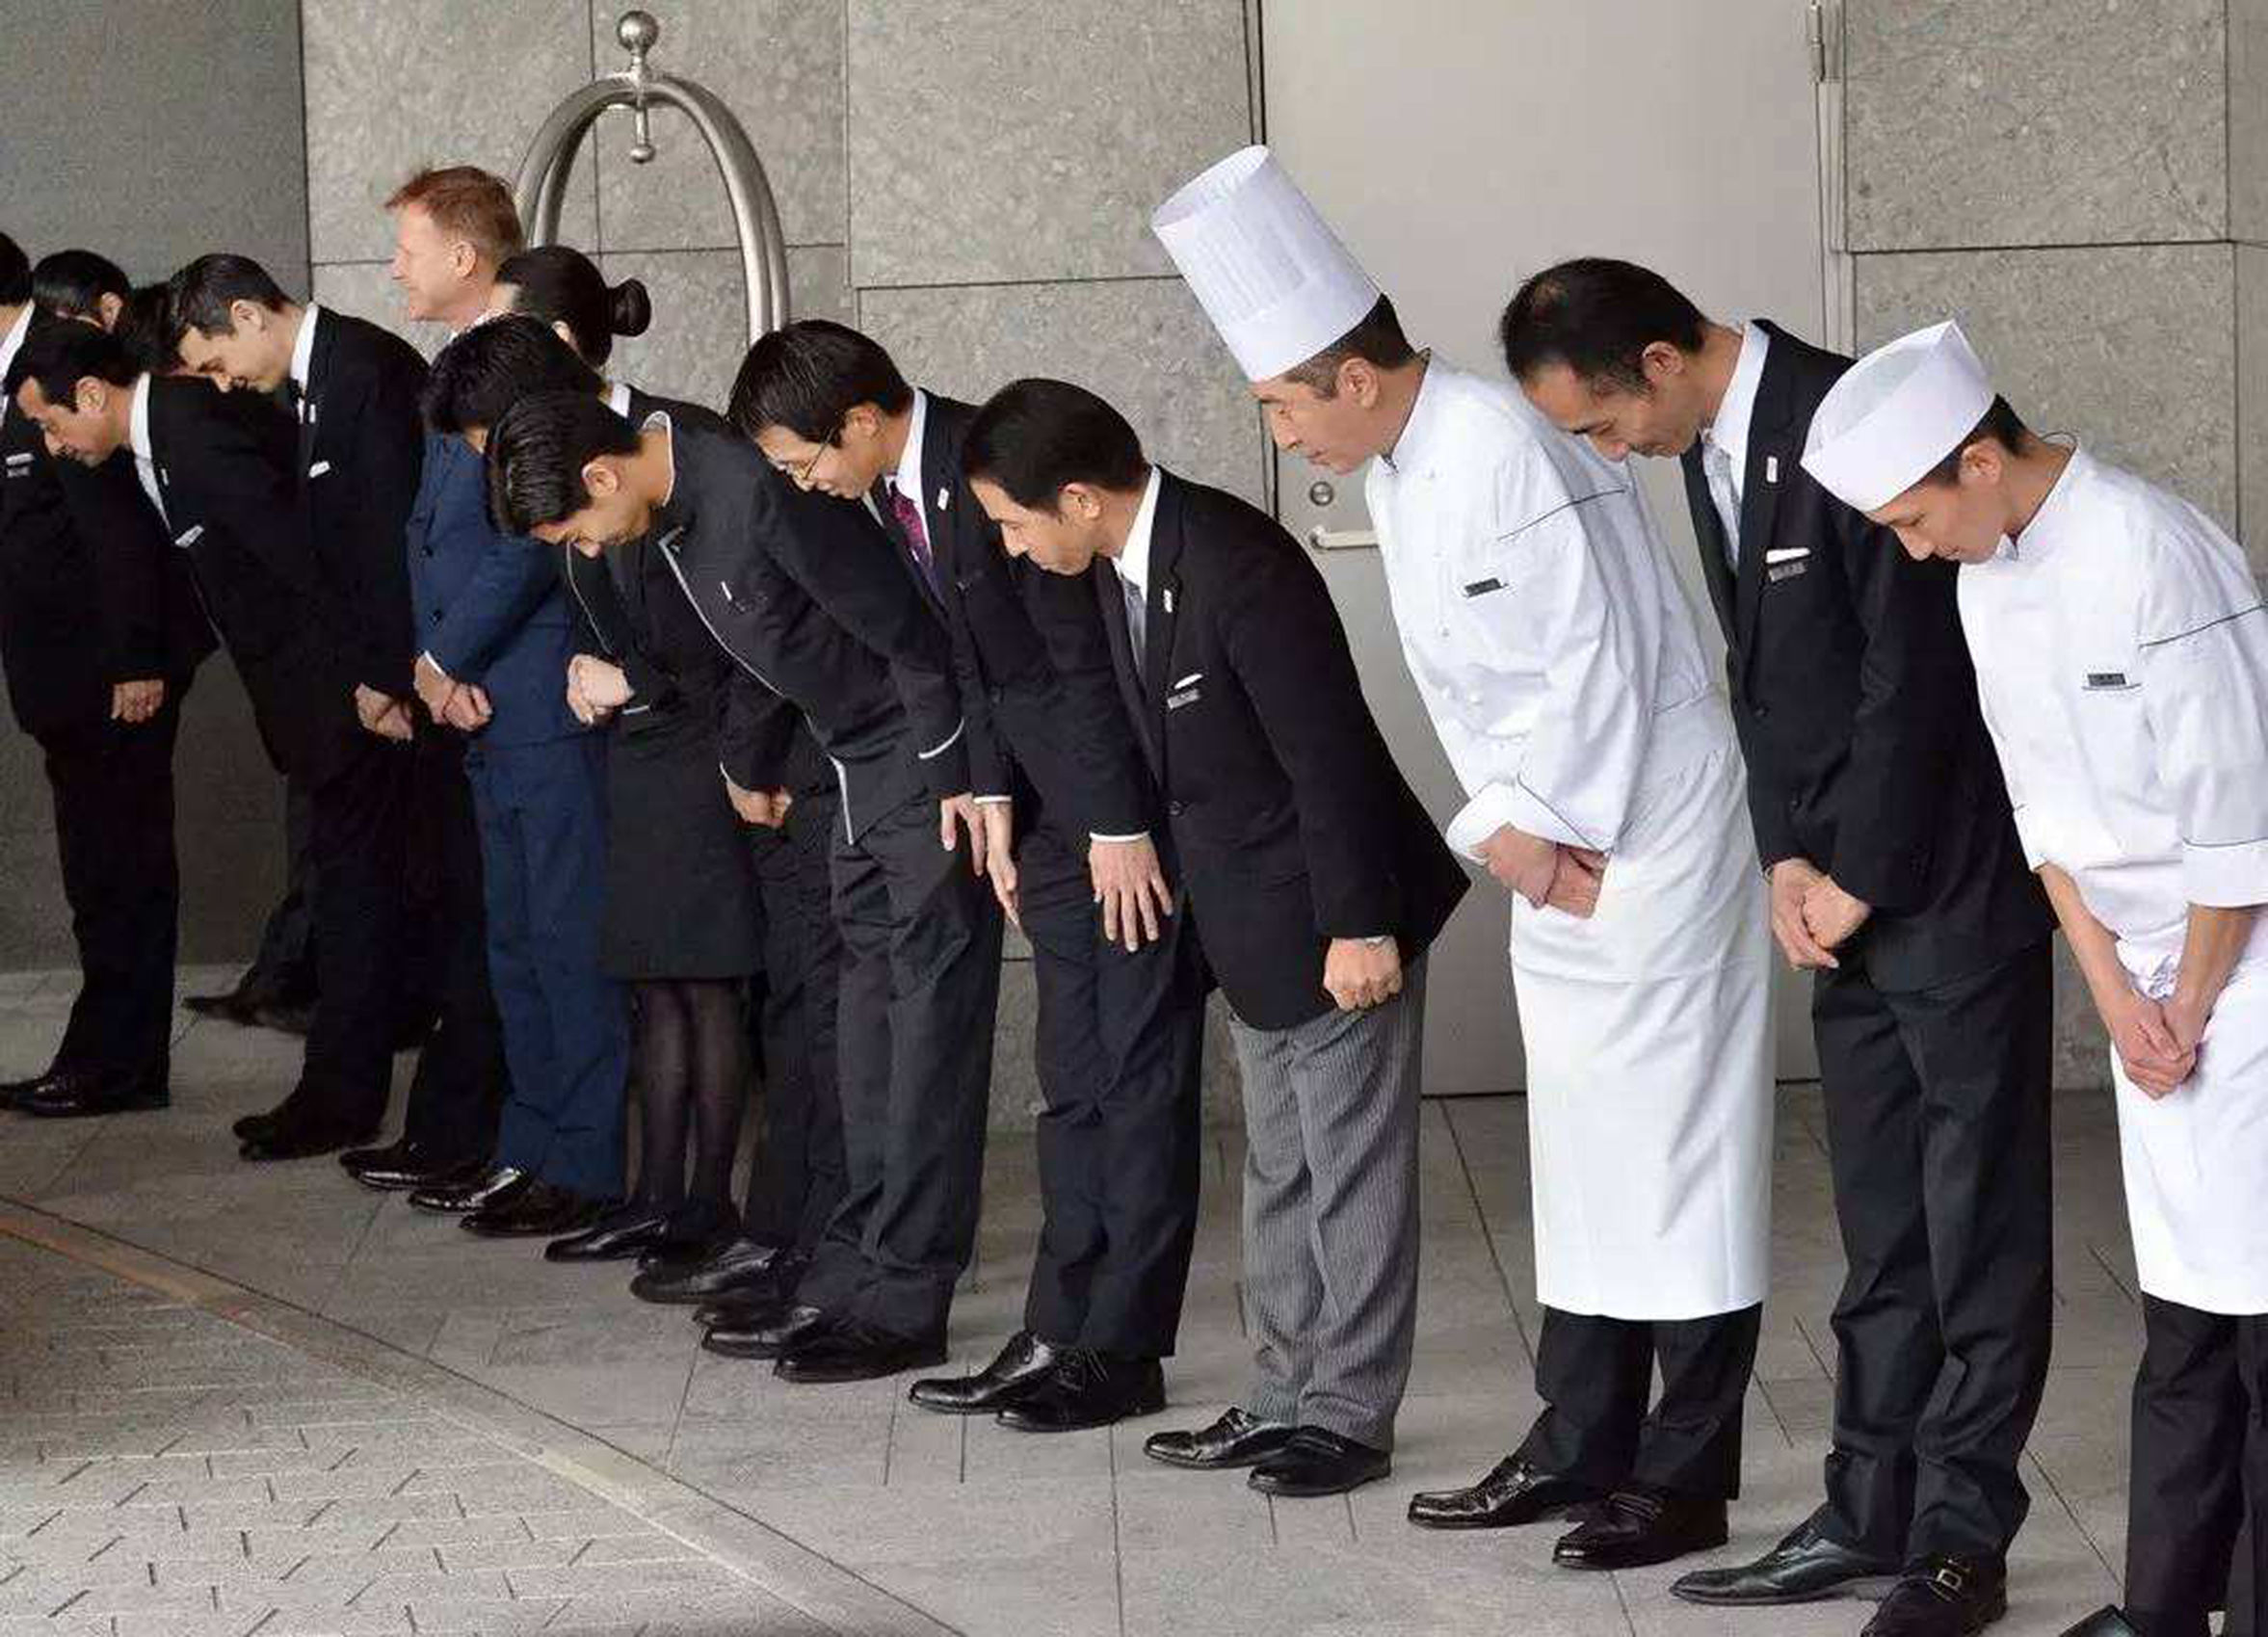 在日本是很不管认识与否,日本人见面就会向你微笑鞠躬